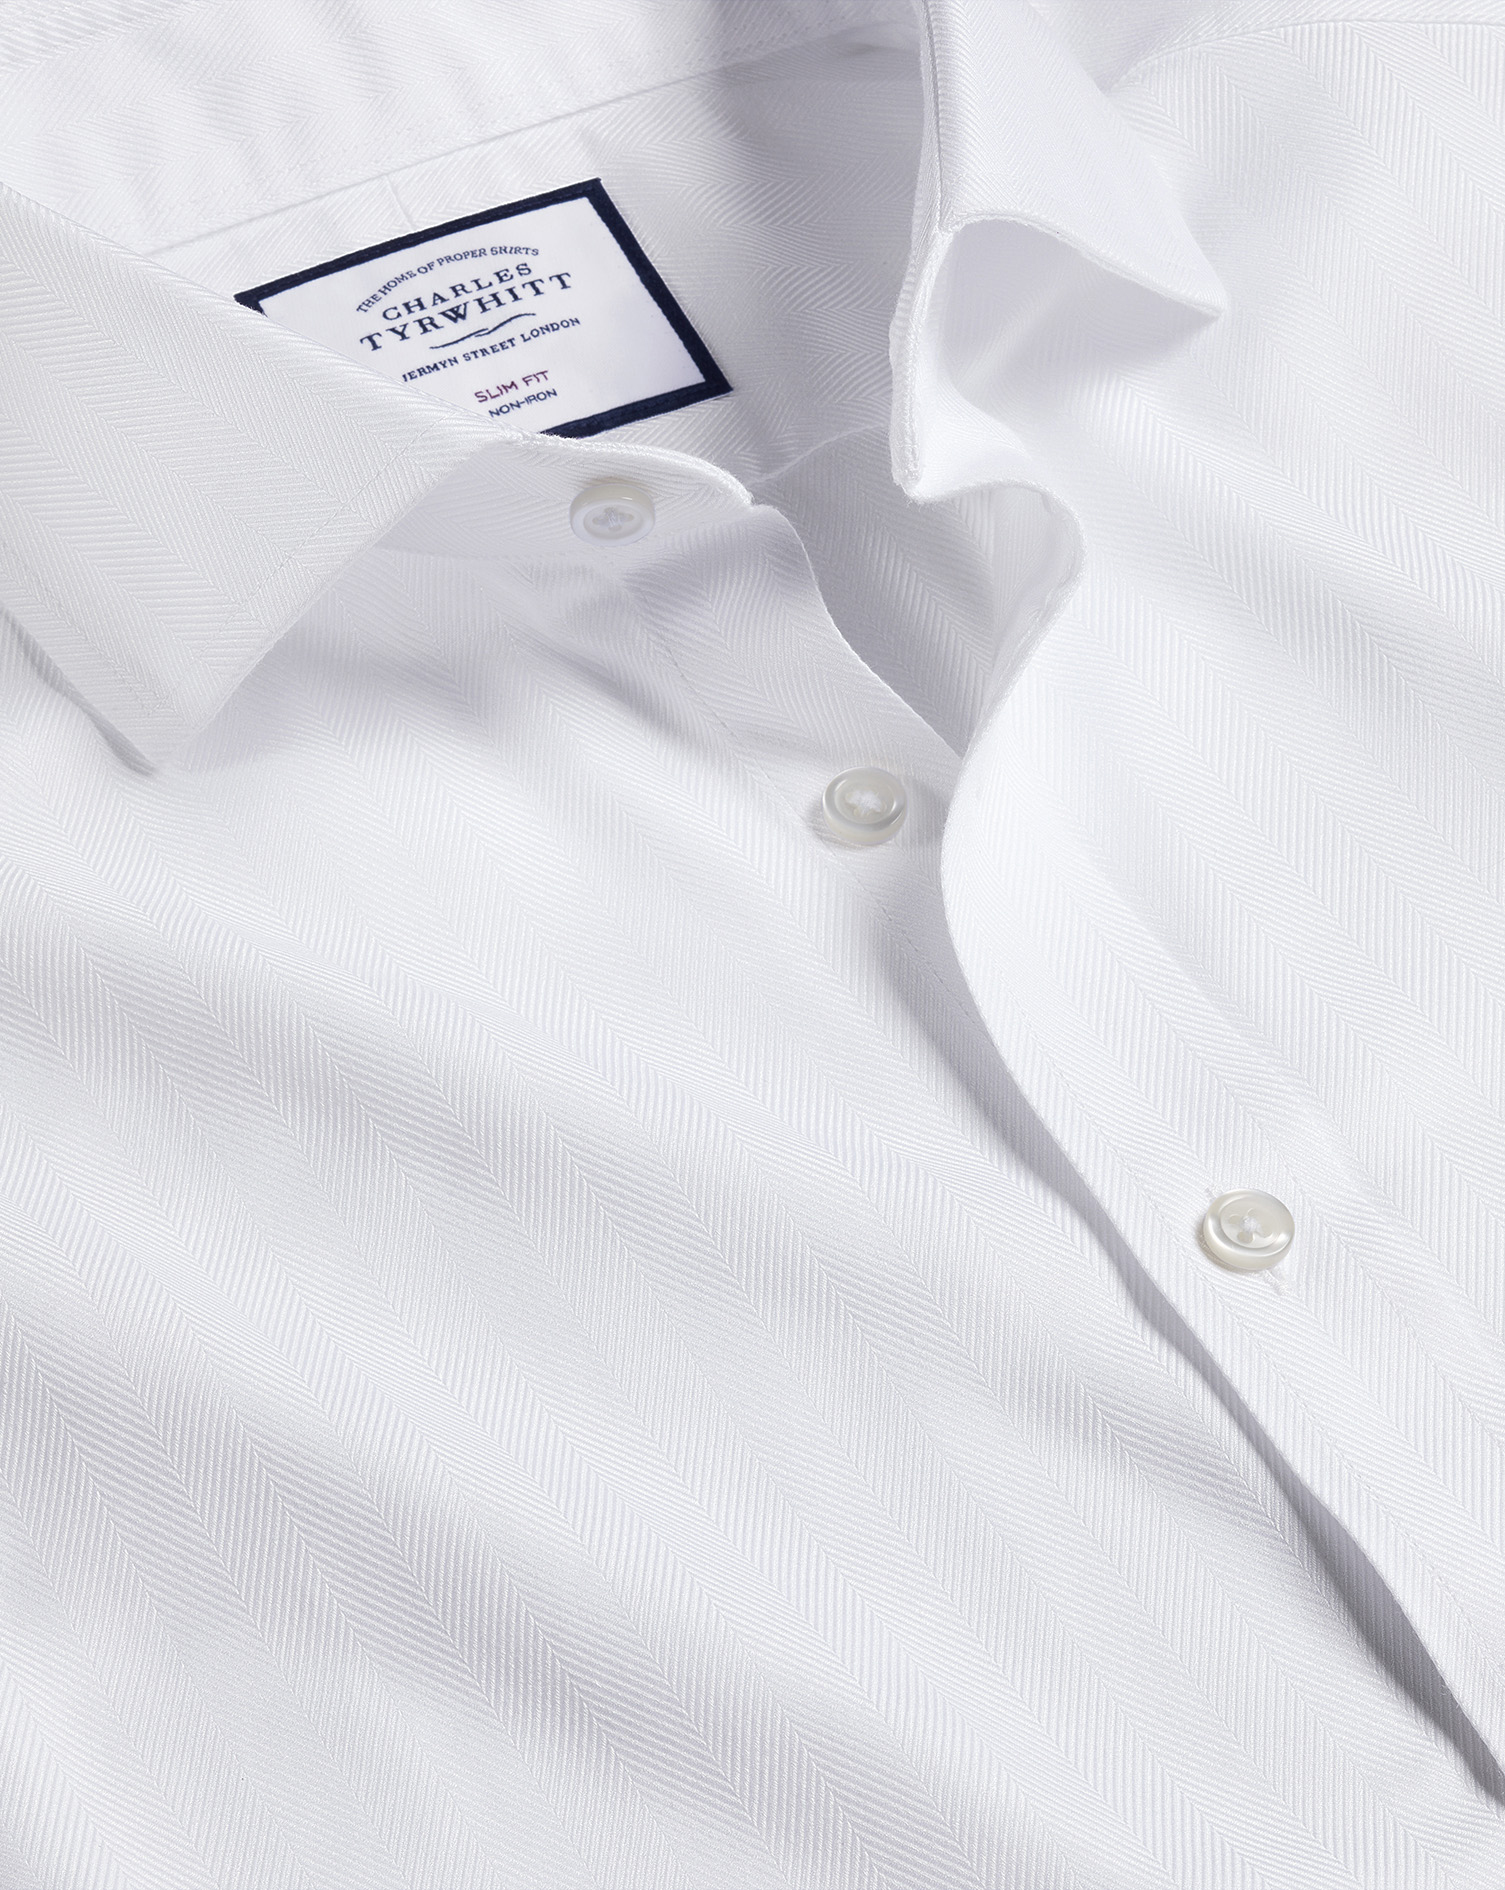 Men's Charles Tyrwhitt Cutaway Collar Non-Iron Herringbone Dress Shirt - White French Cuff Size XL C